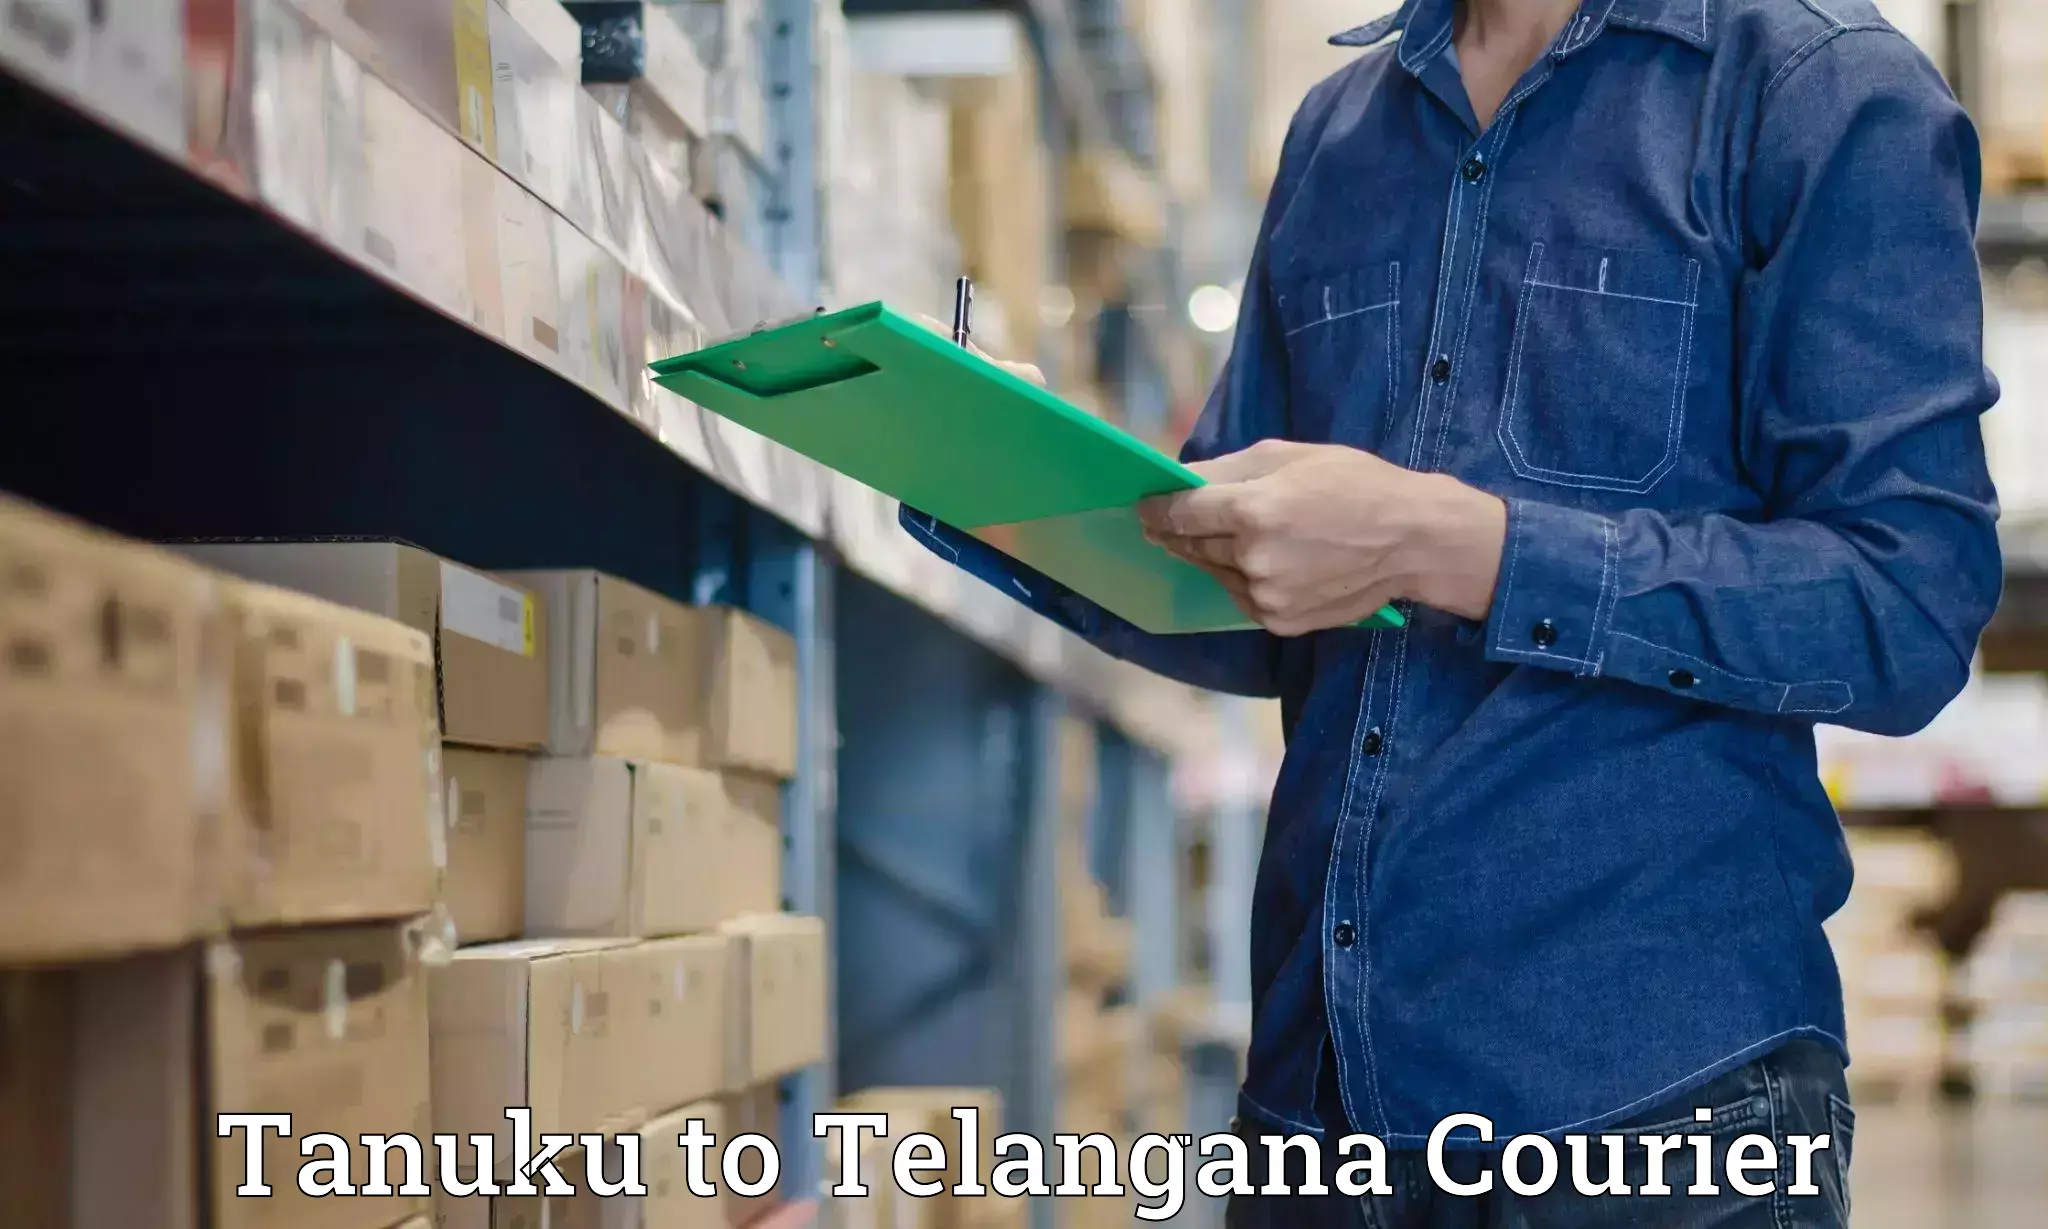 Baggage shipping service in Tanuku to Telangana